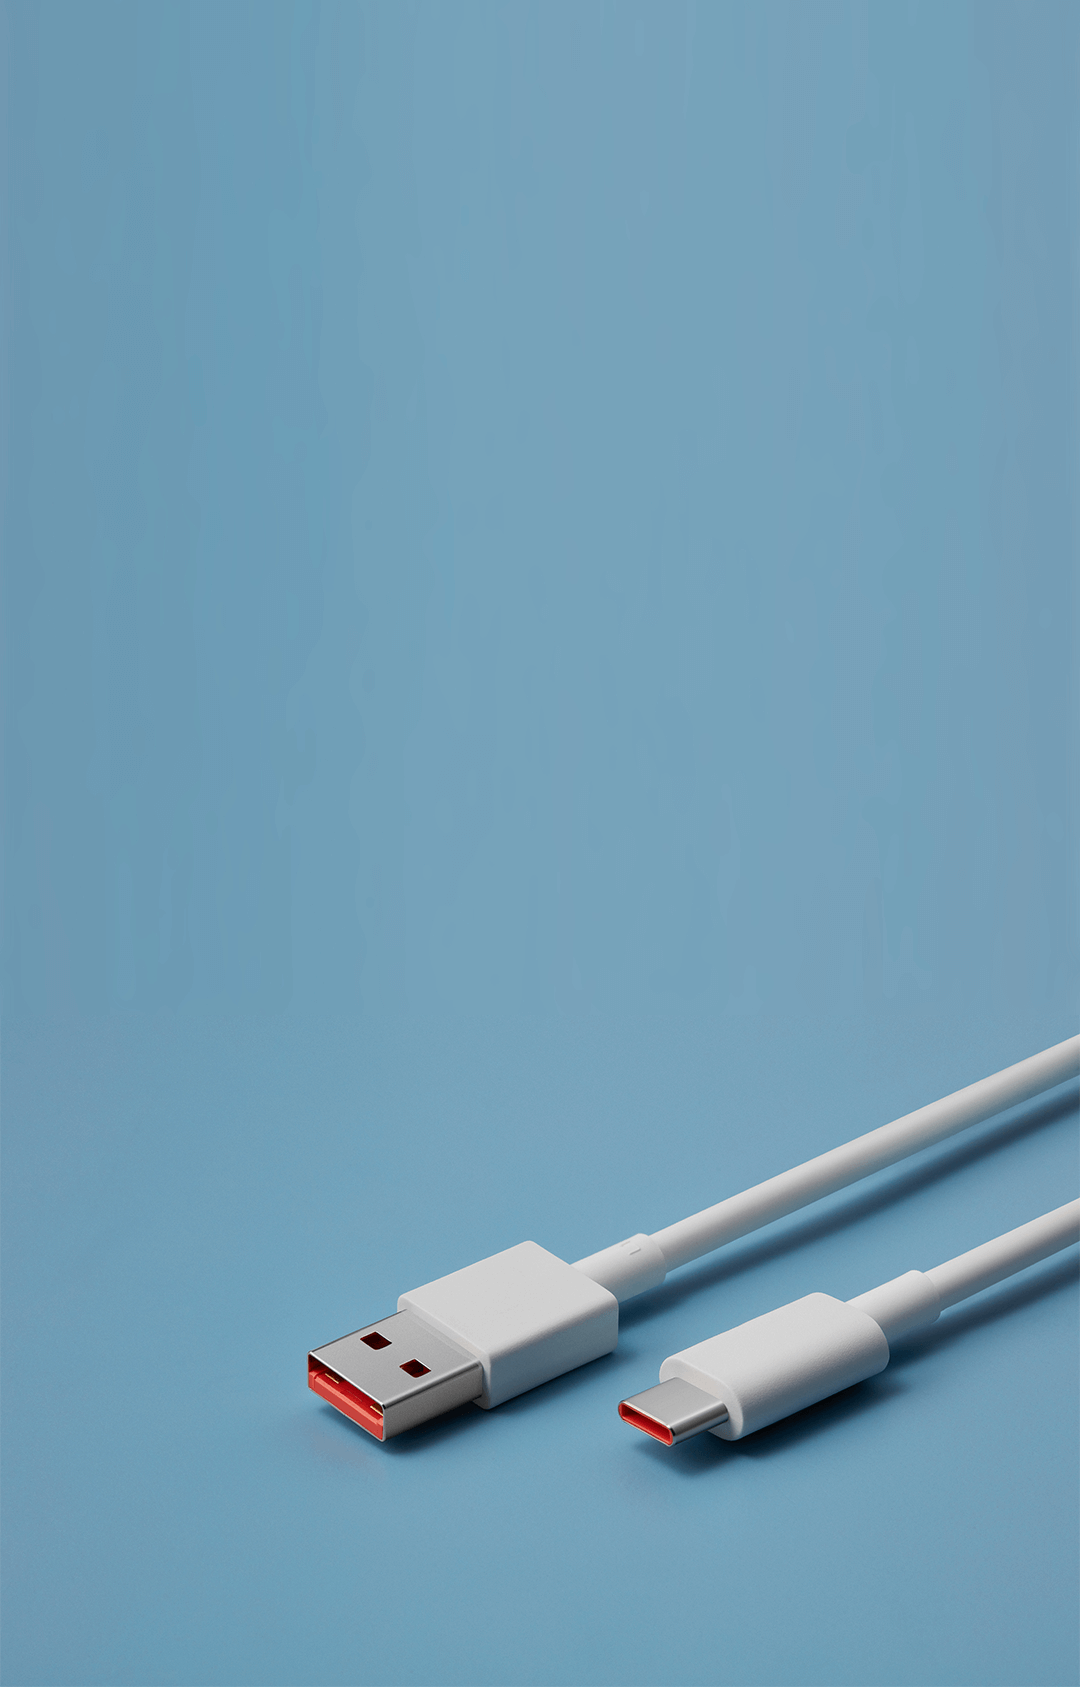 Cargador + Cable Xiaomi Carga Rapida Tipo C 27 Watts